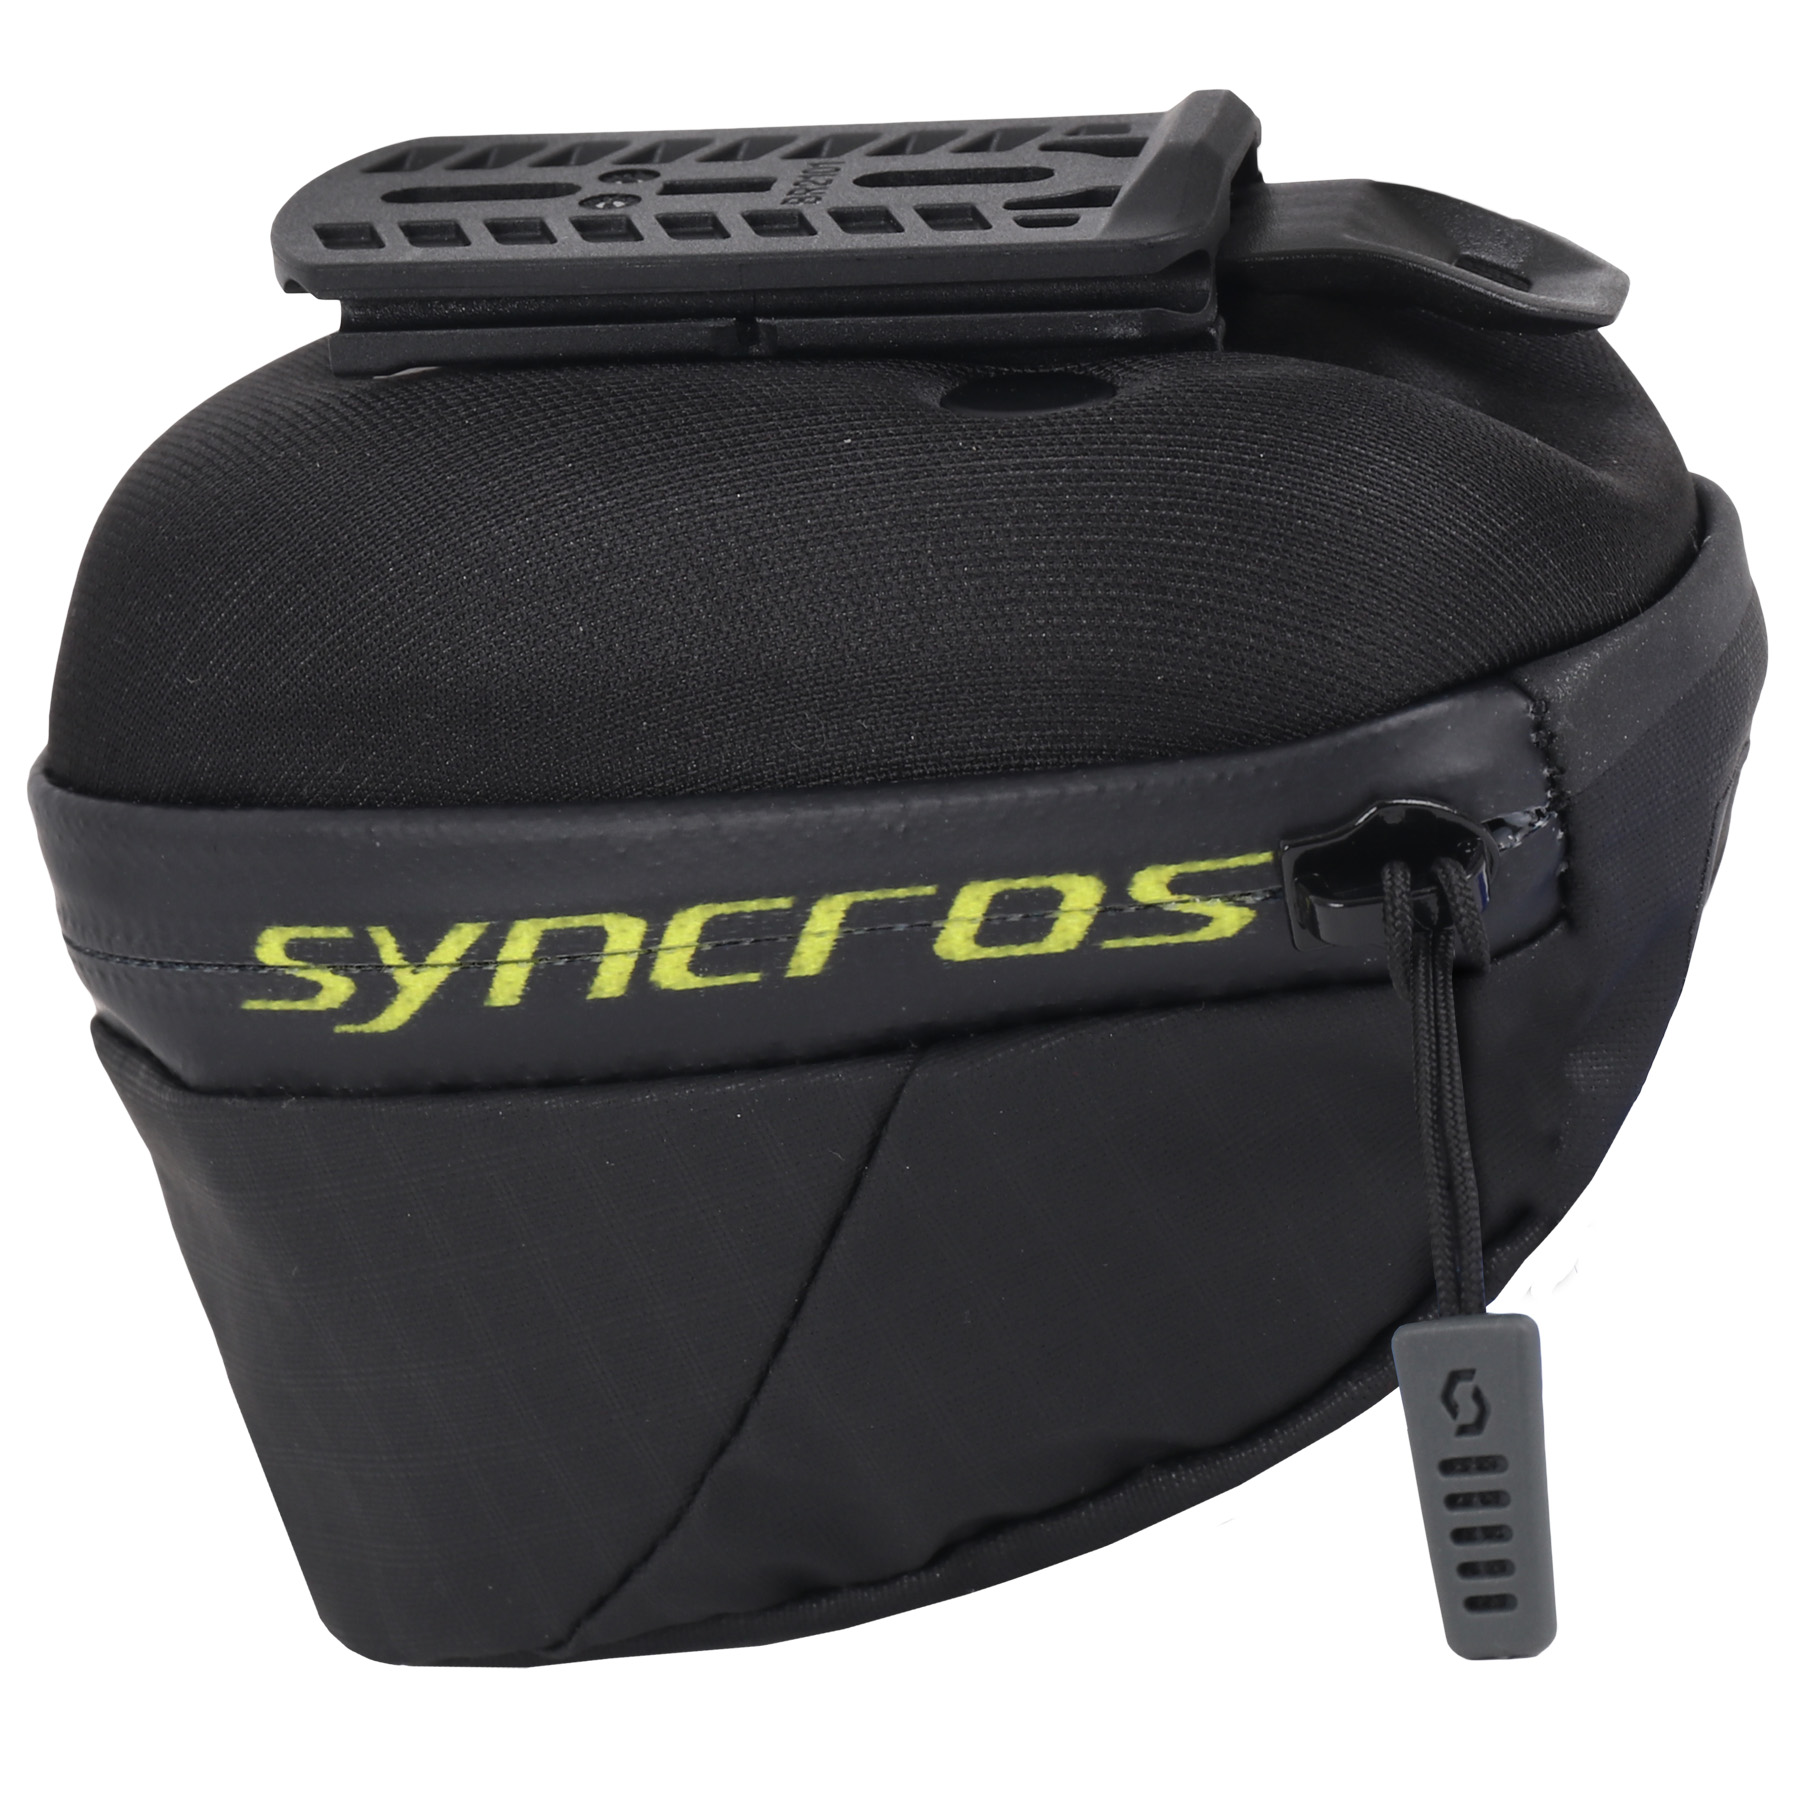 Produktbild von Syncros iS Quick Release 450 Satteltasche - schwarz